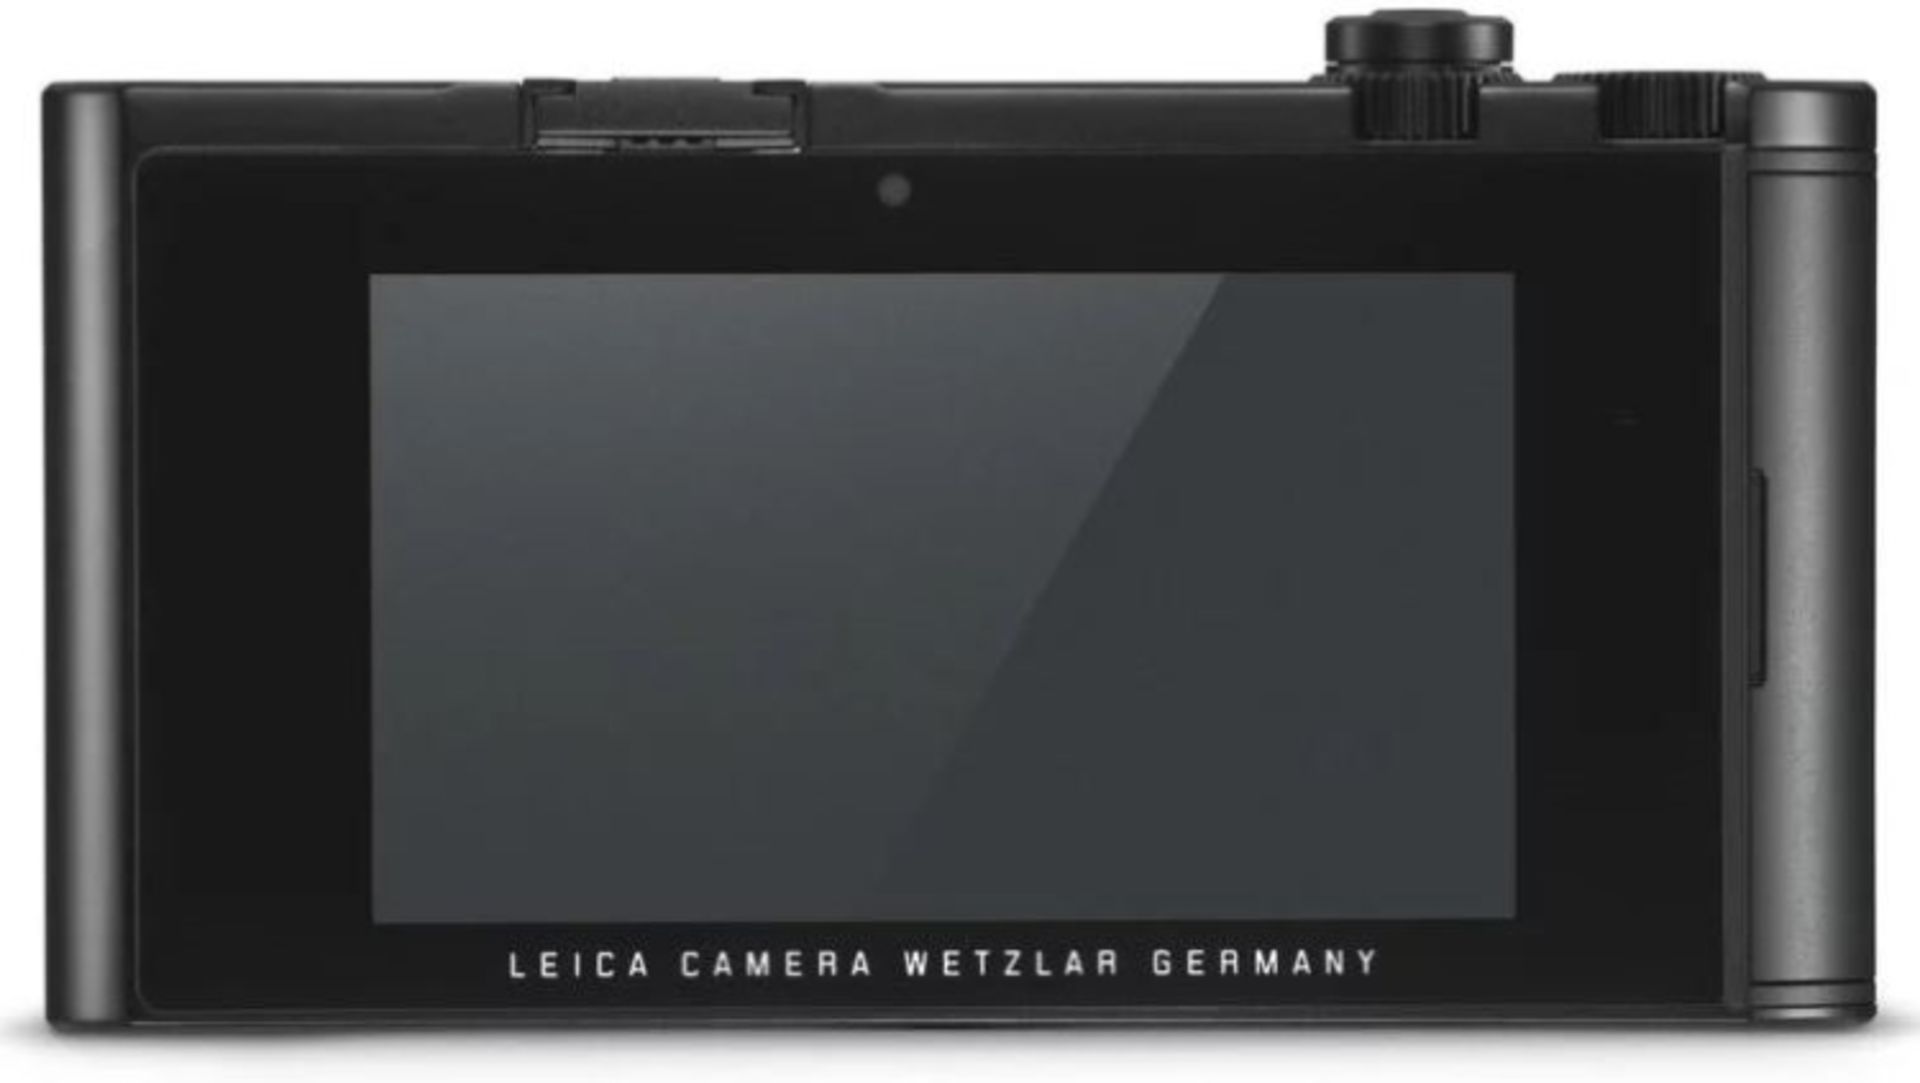 دوربین لایکا تی ال 2 / Leica TL2